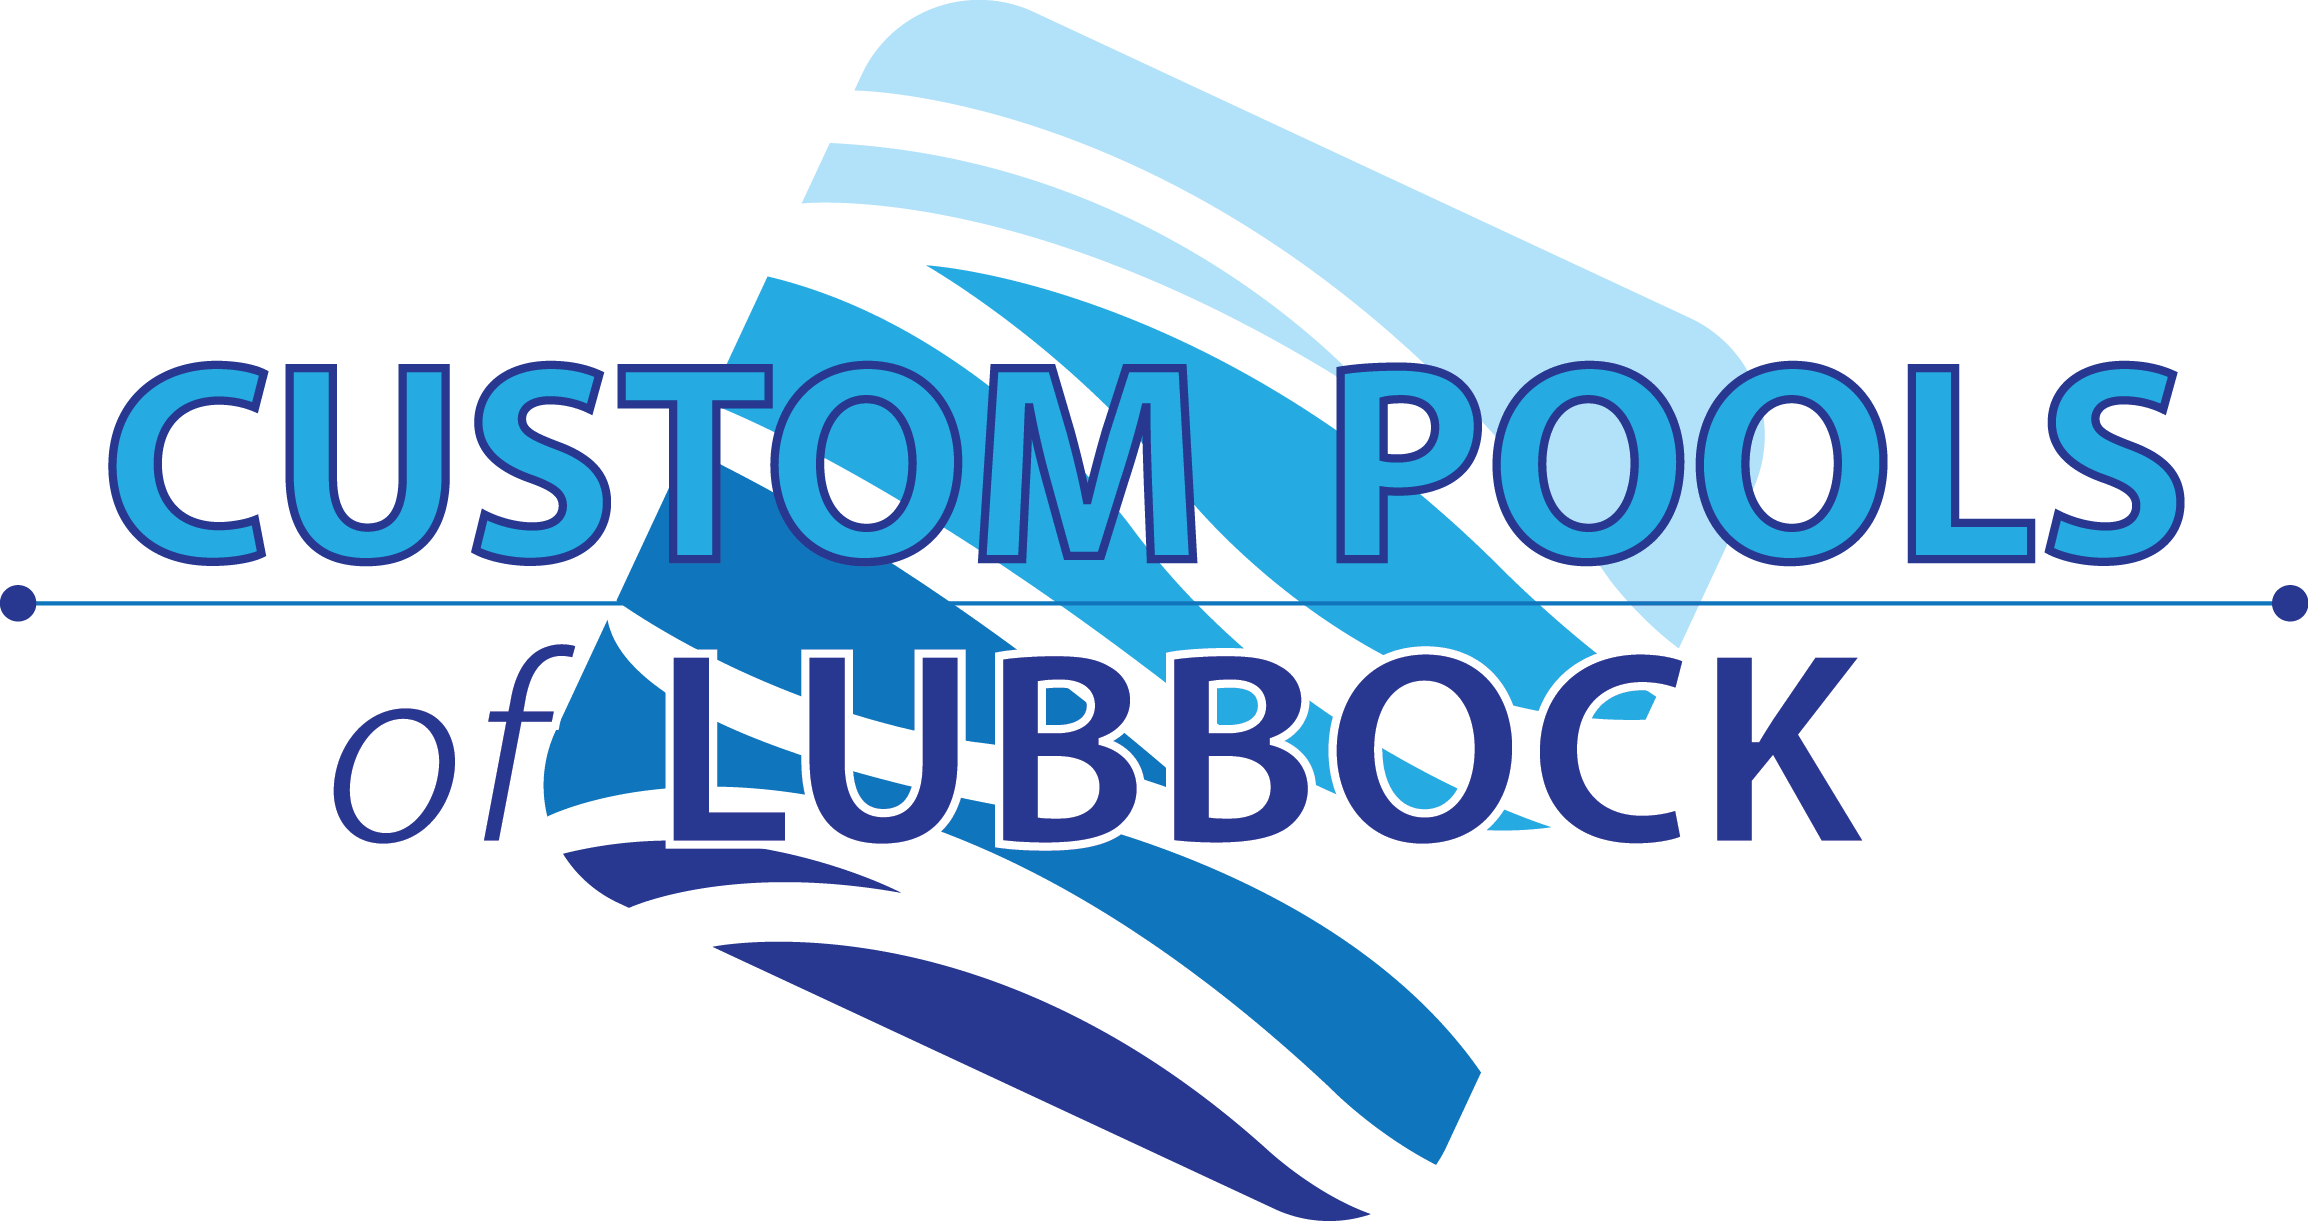 Custom pools of Lubbock